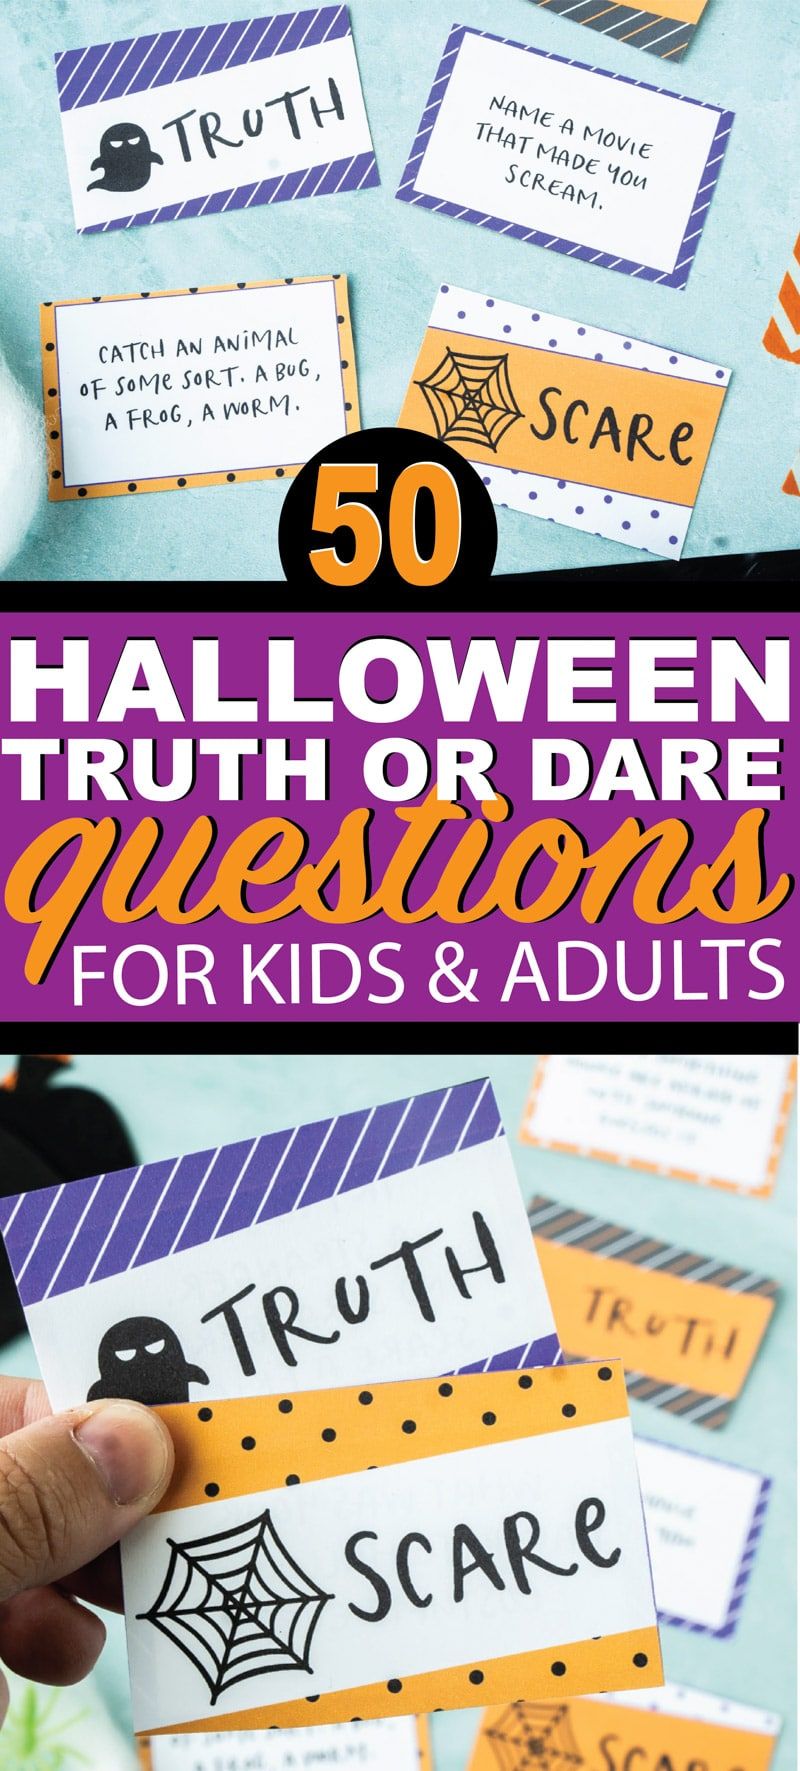 Zábavná pravda inspirovaná Halloweenem nebo odvaha na otázky! Ideální pro dospívající, pro děti, pro dívky a pro chlapce! Každý bude milovat tuto halloweenskou pravdu nebo strašidelnou verzi klasické hry na pravdu nebo odvahu! A bonus - všechny otázky týkající se pravdy nebo odvahy jsou čisté. Ideální pro rodinnou halloweenskou zábavu!